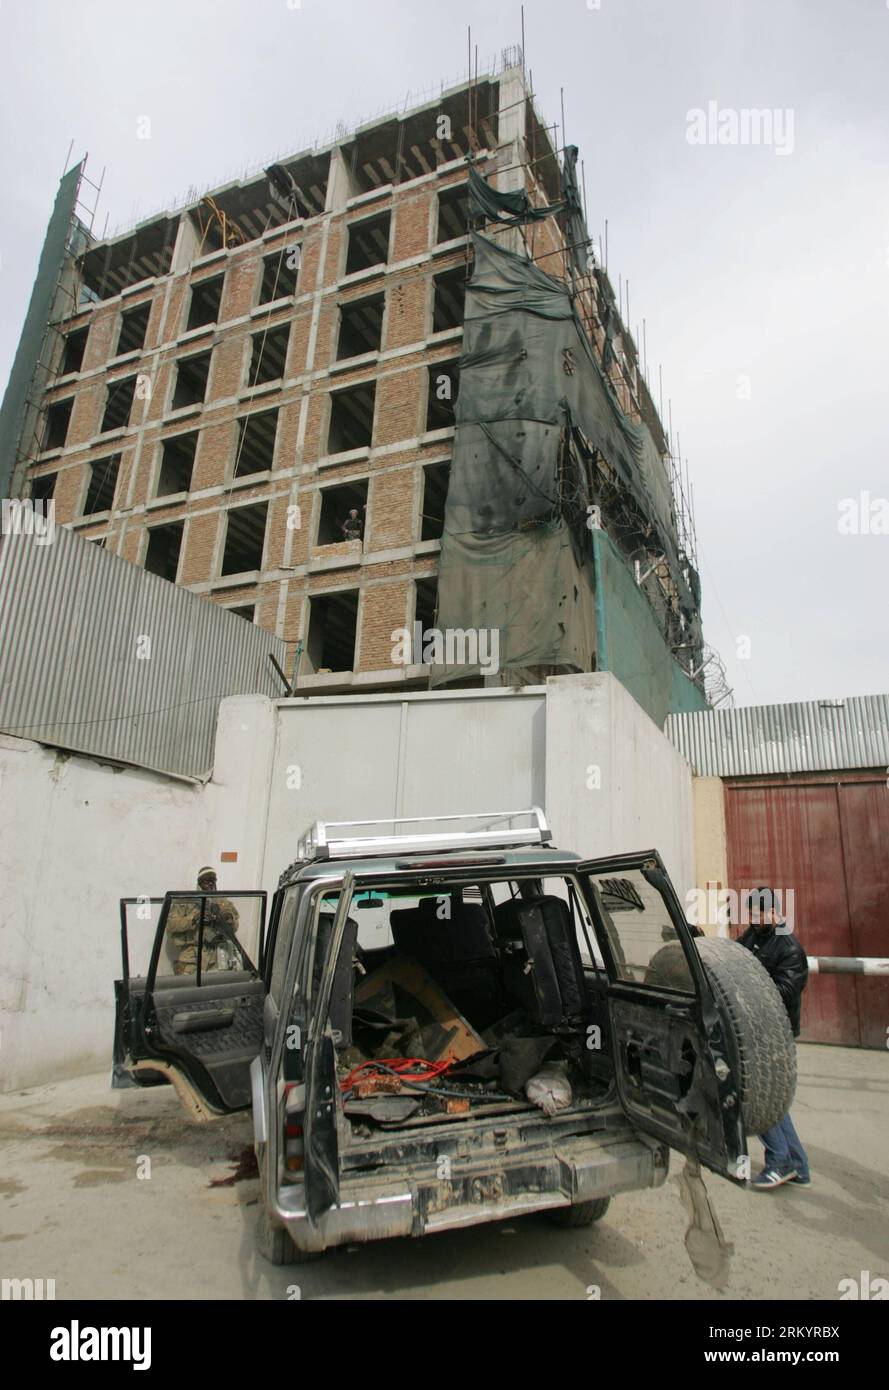 Bildnummer : 59264675 Datum : 24.02.2013 Copyright : imago/Xinhua (130224) -- KABOUL, 24 février 2013 (Xinhua) -- Une voiture utilisée comme attentat suicide à la bombe a été vue dans le quartier de Shirpoor à Kaboul, Afghanistan, le 24 février 2013. Les forces de sécurité afghanes ont abattu deux futurs kamikazes dimanche matin, déjouant ainsi une attaque terroriste dans la région de Shirpoor, une enclave diplomatique dans la capitale Kaboul, a déclaré la police. (Xinhua/Ahmad Massoud)(dtf) AFGHANISTAN-KABOUL-PRÉVENTION DES ATTENTATS-SUICIDES PUBLICATIONxNOTxINxCHN Gesellschaft Politik Terror Anschlag Terroranschlag bombe Bombenanschlag Selbstmordanschlag premiumd x0x xds 2013 h Banque D'Images